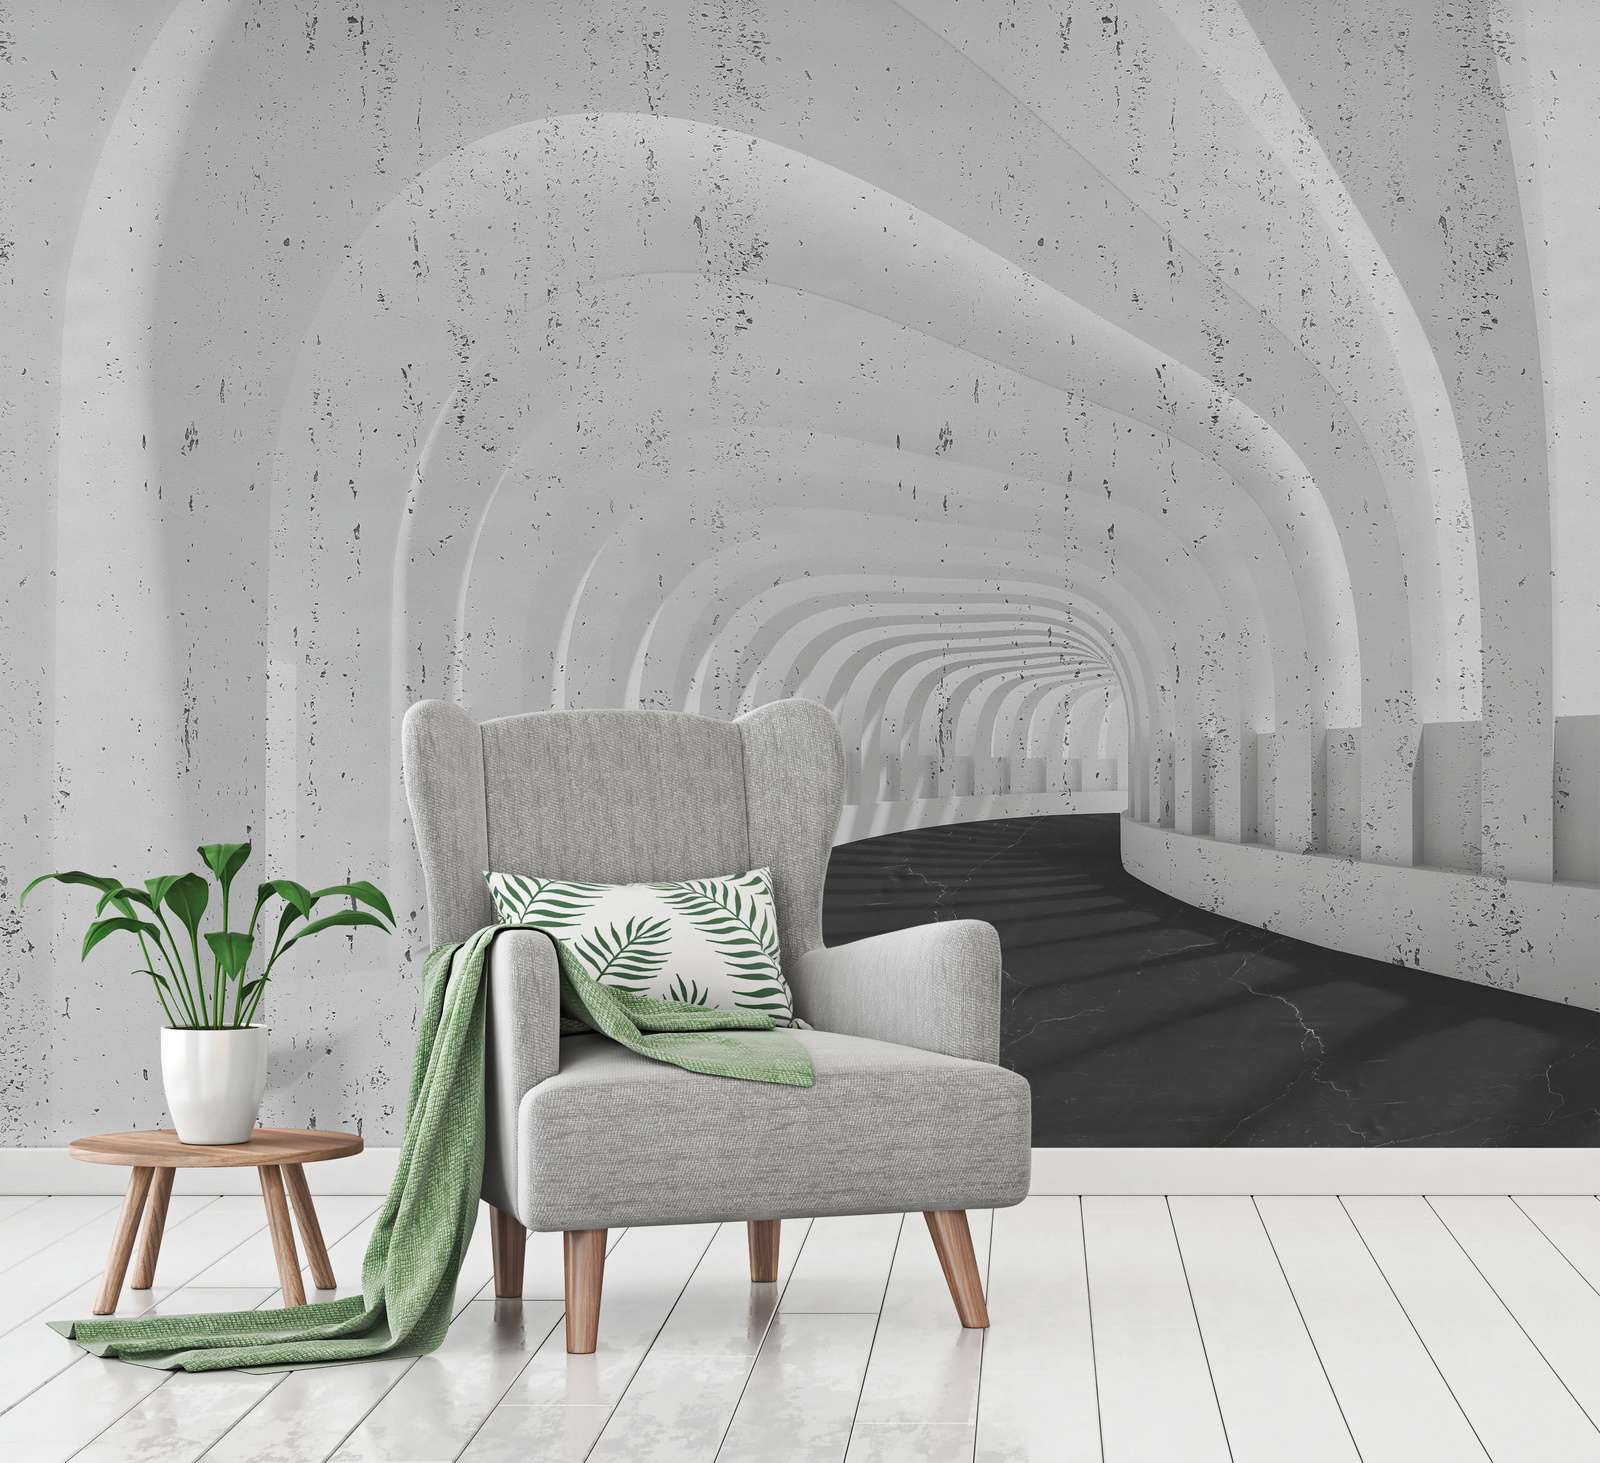             Fototapete 3D Tunnel aus Beton mit Bögen – Grau, Schwarz
        